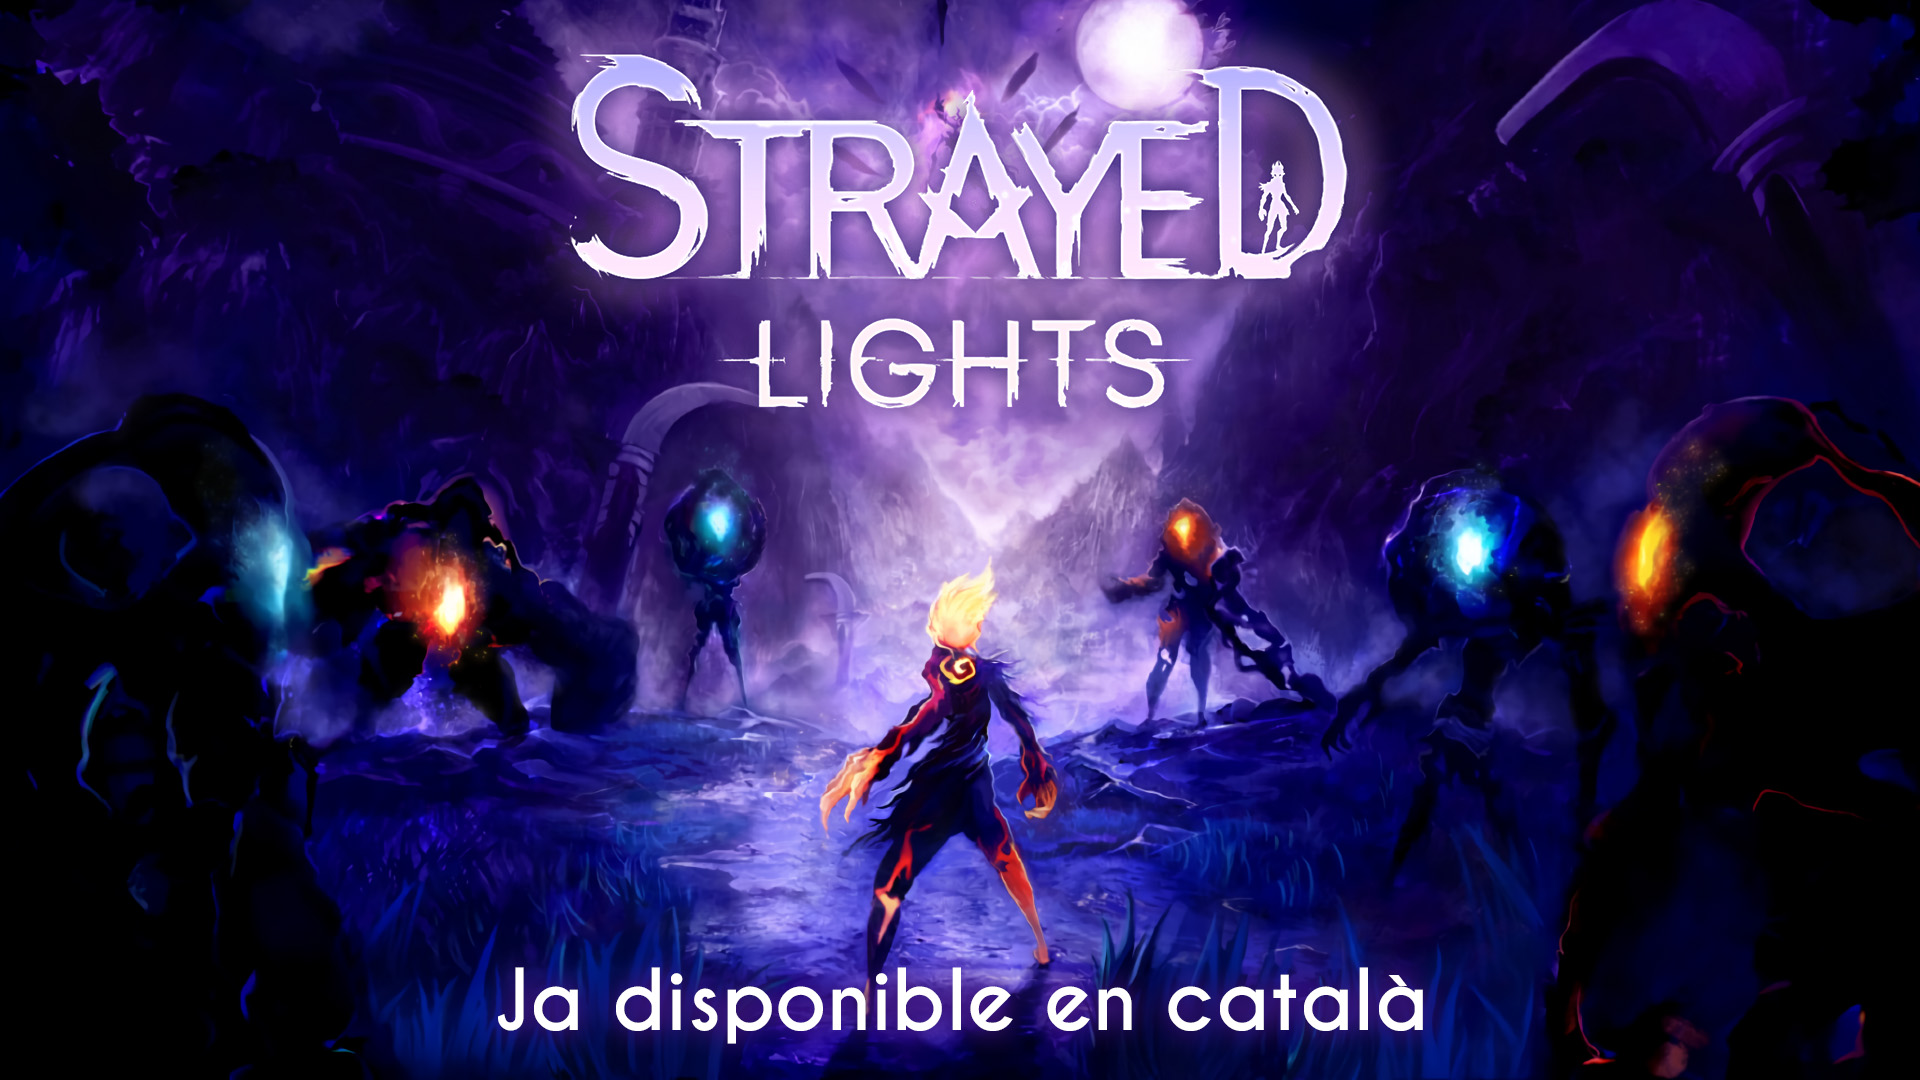 Strayed Lights ja és jugable en català gràcies al Projecte Ce Trencada